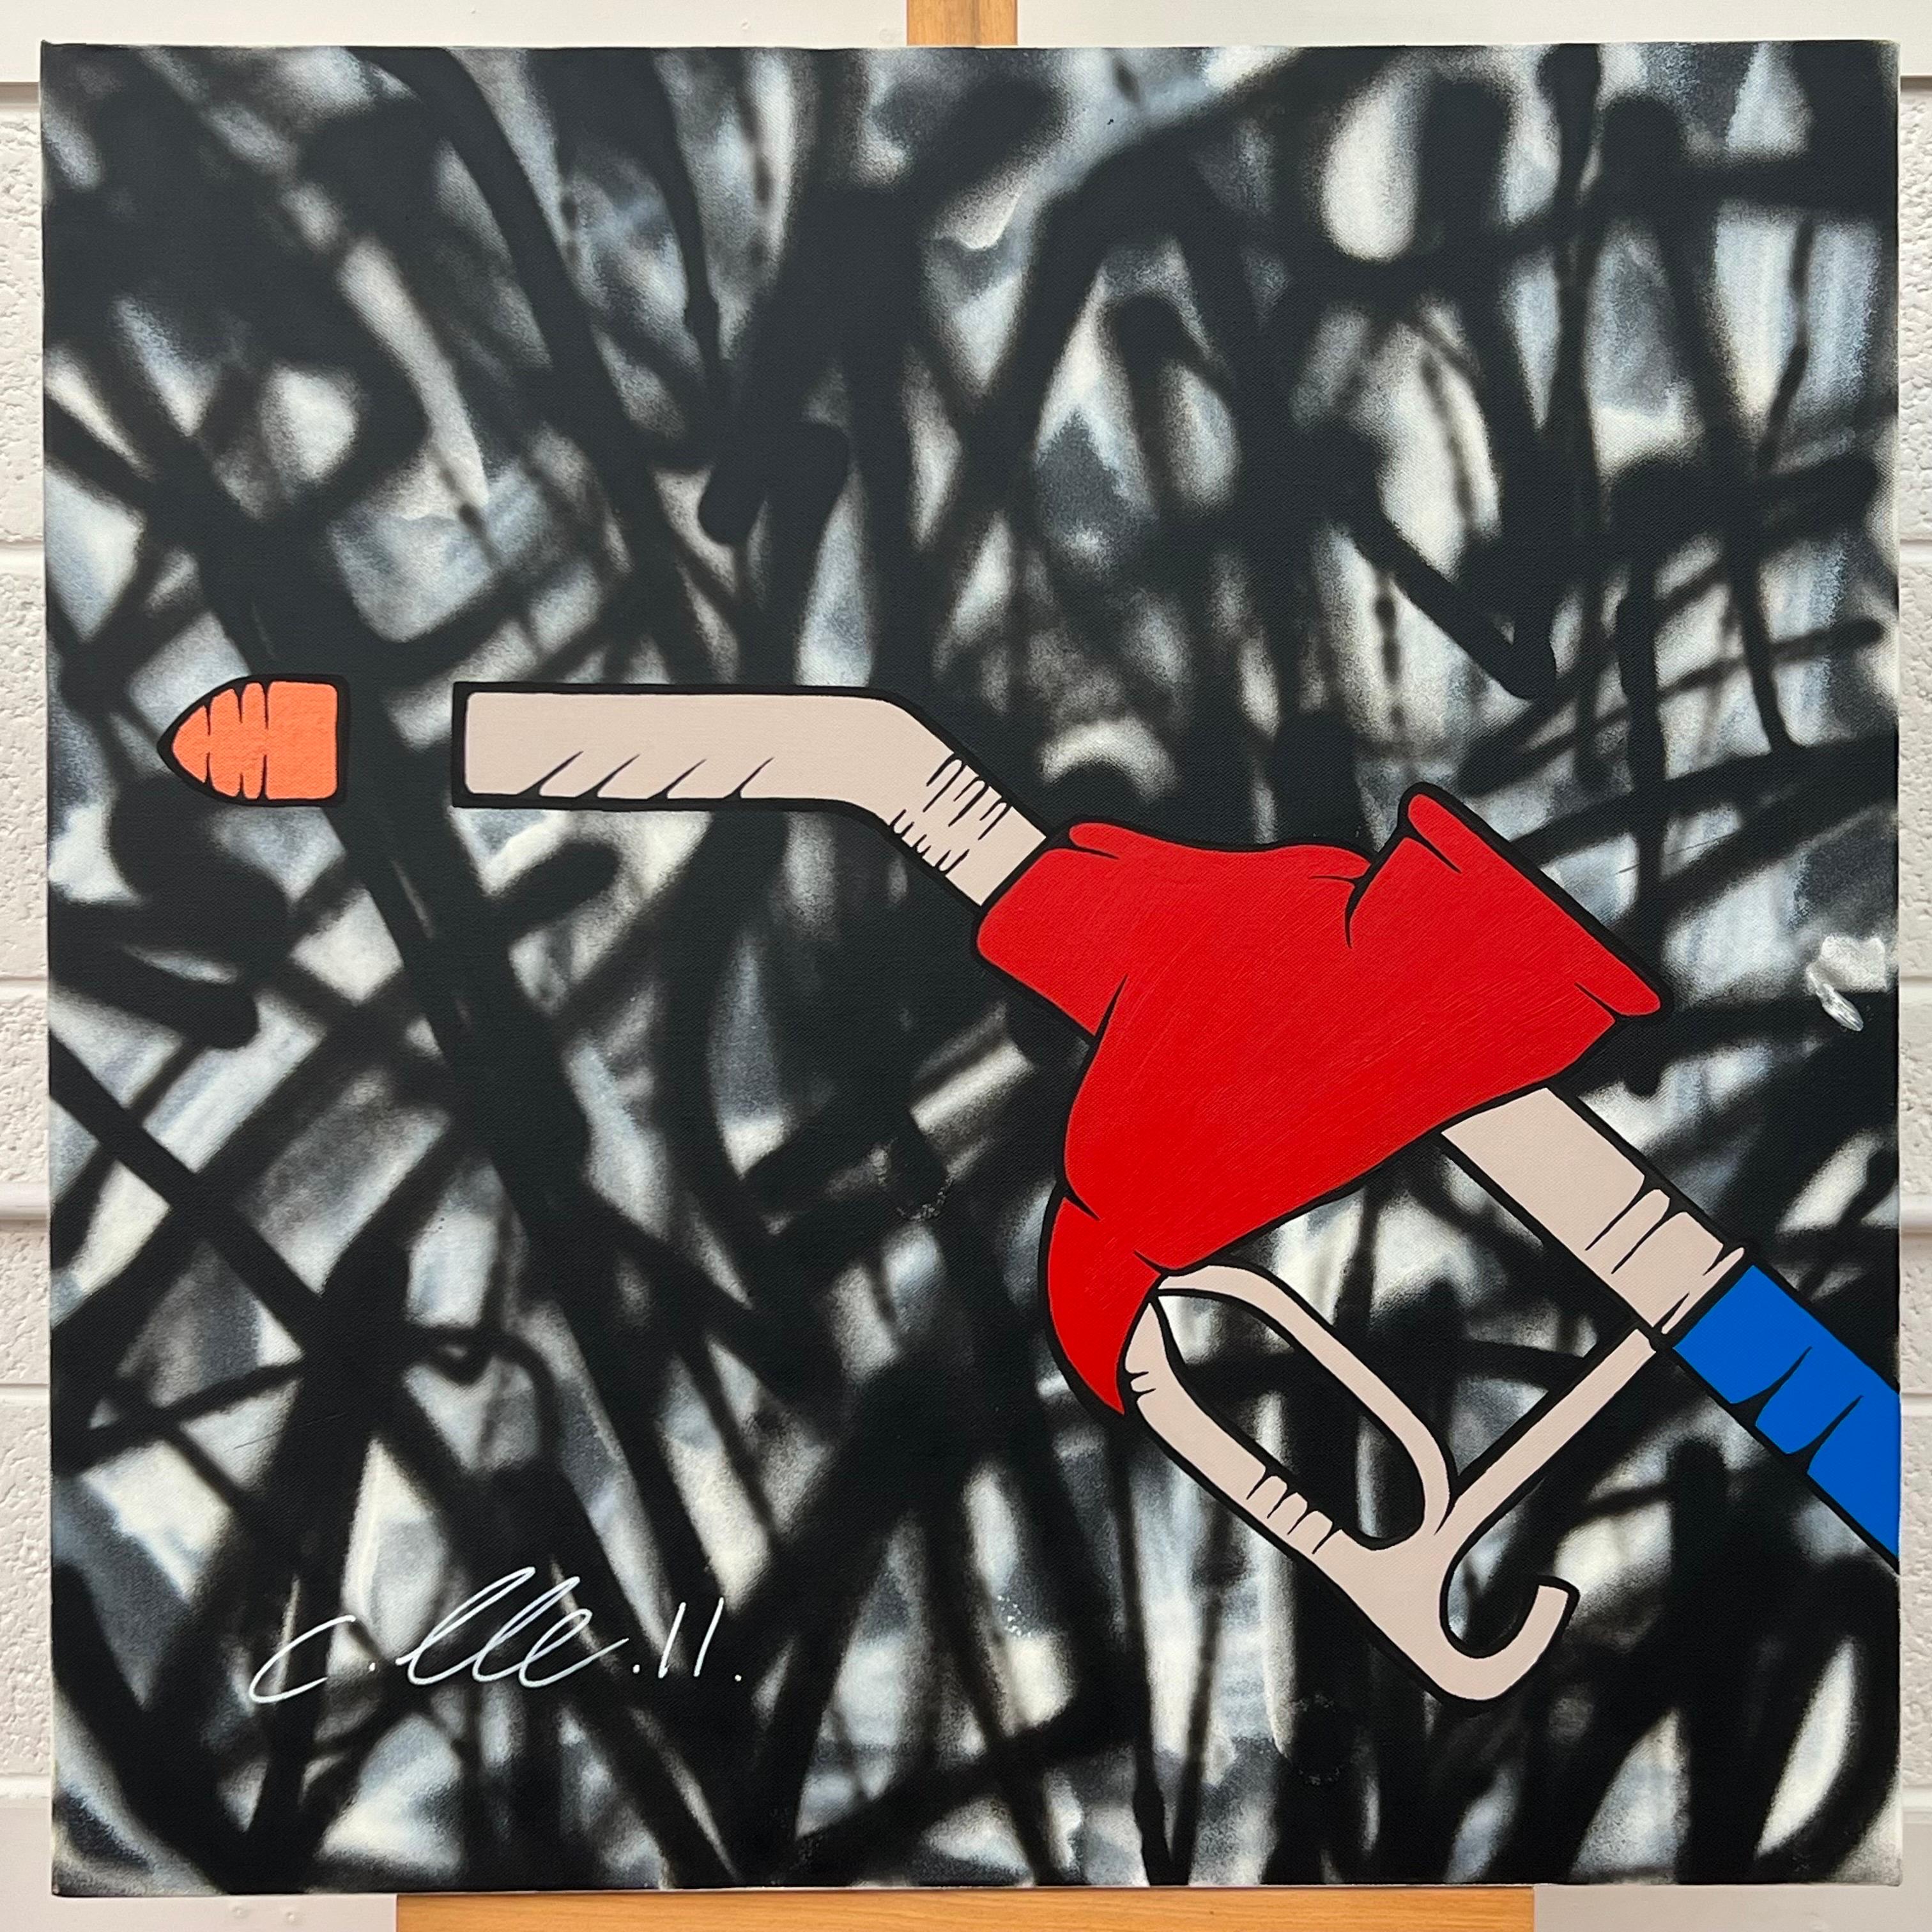 Peinture à l'huile sur fond abstrait - Pop Art - Fuel Pump par un artiste graffiti britannique - Painting de Chris Pegg